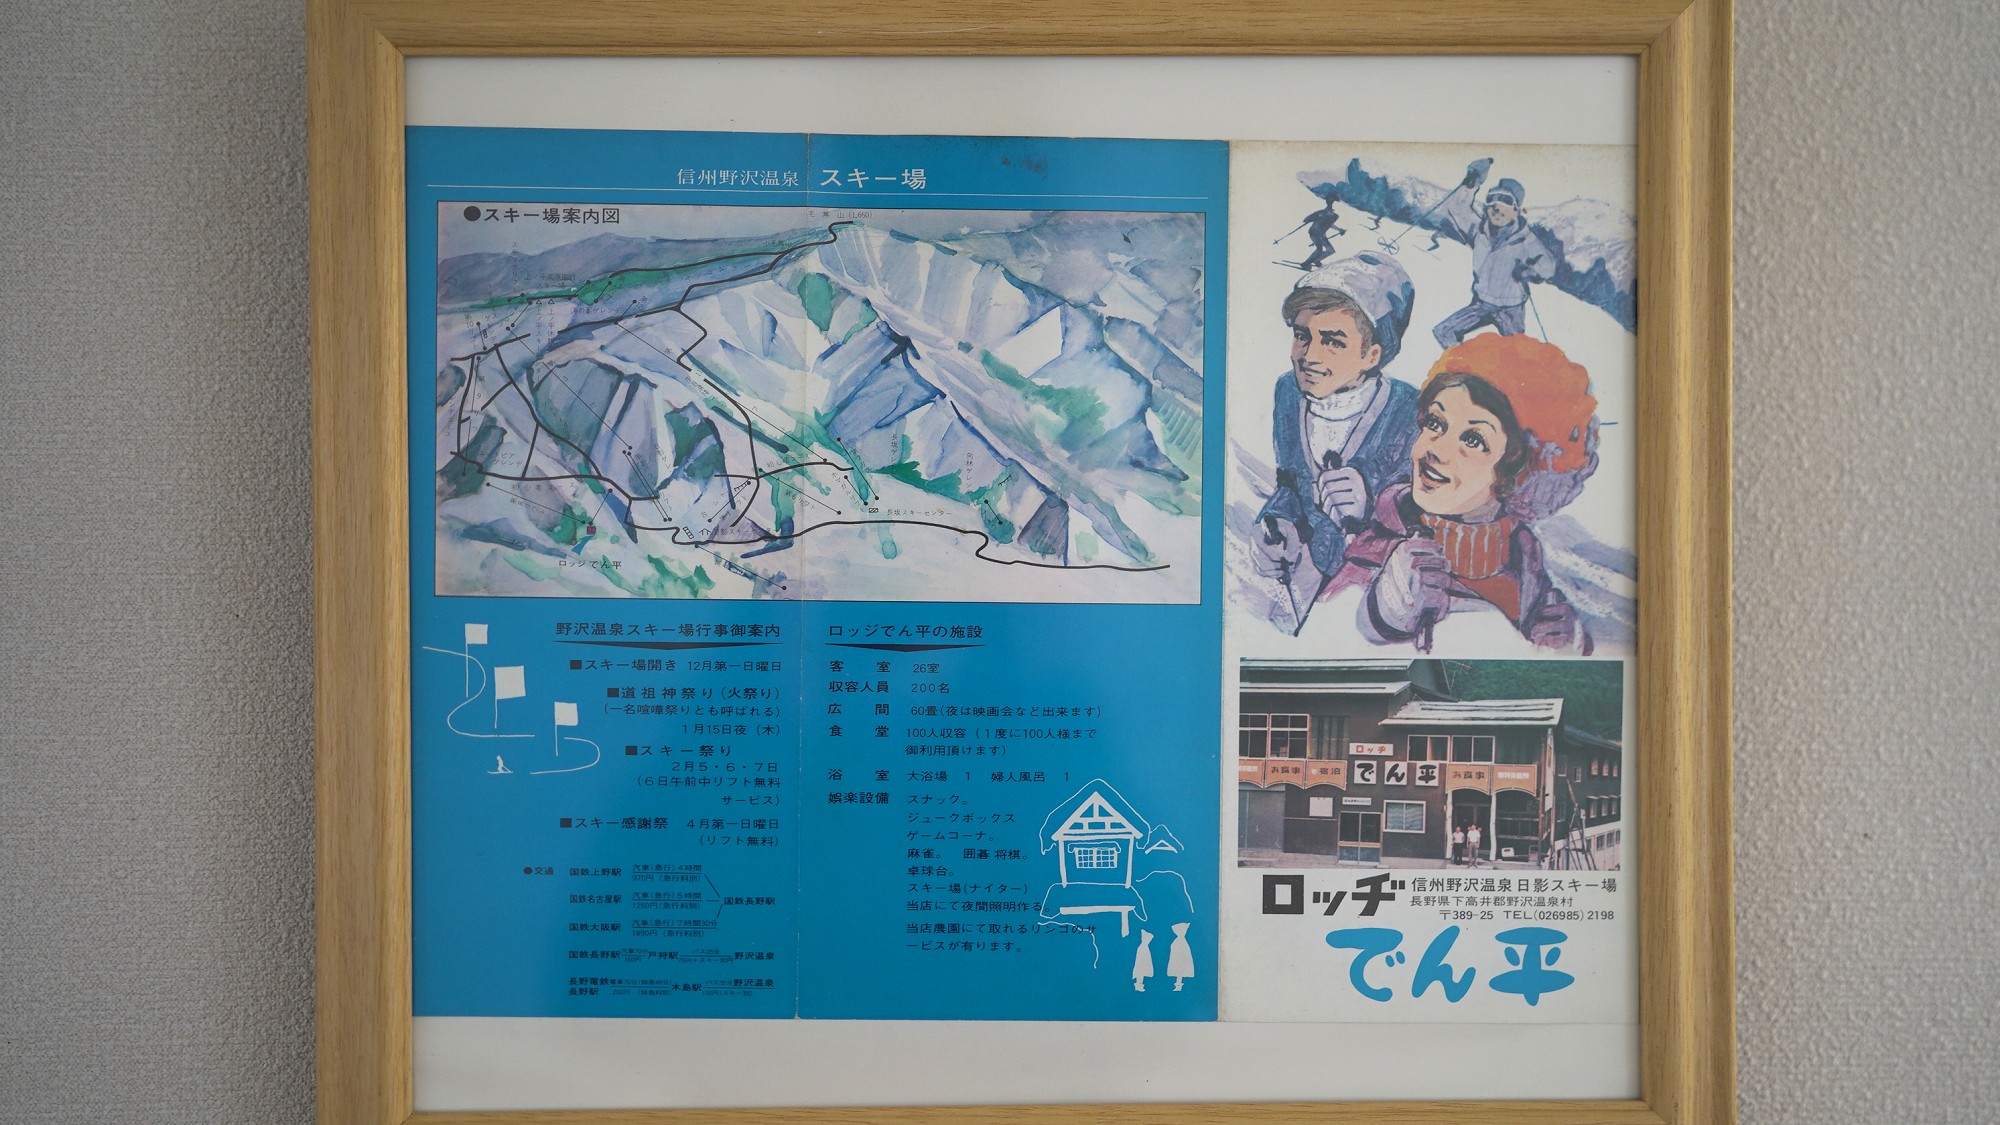 「ロッジでんべえ」は、実は「ロッヂでん平」でした。昭和レトロなパンフレット。